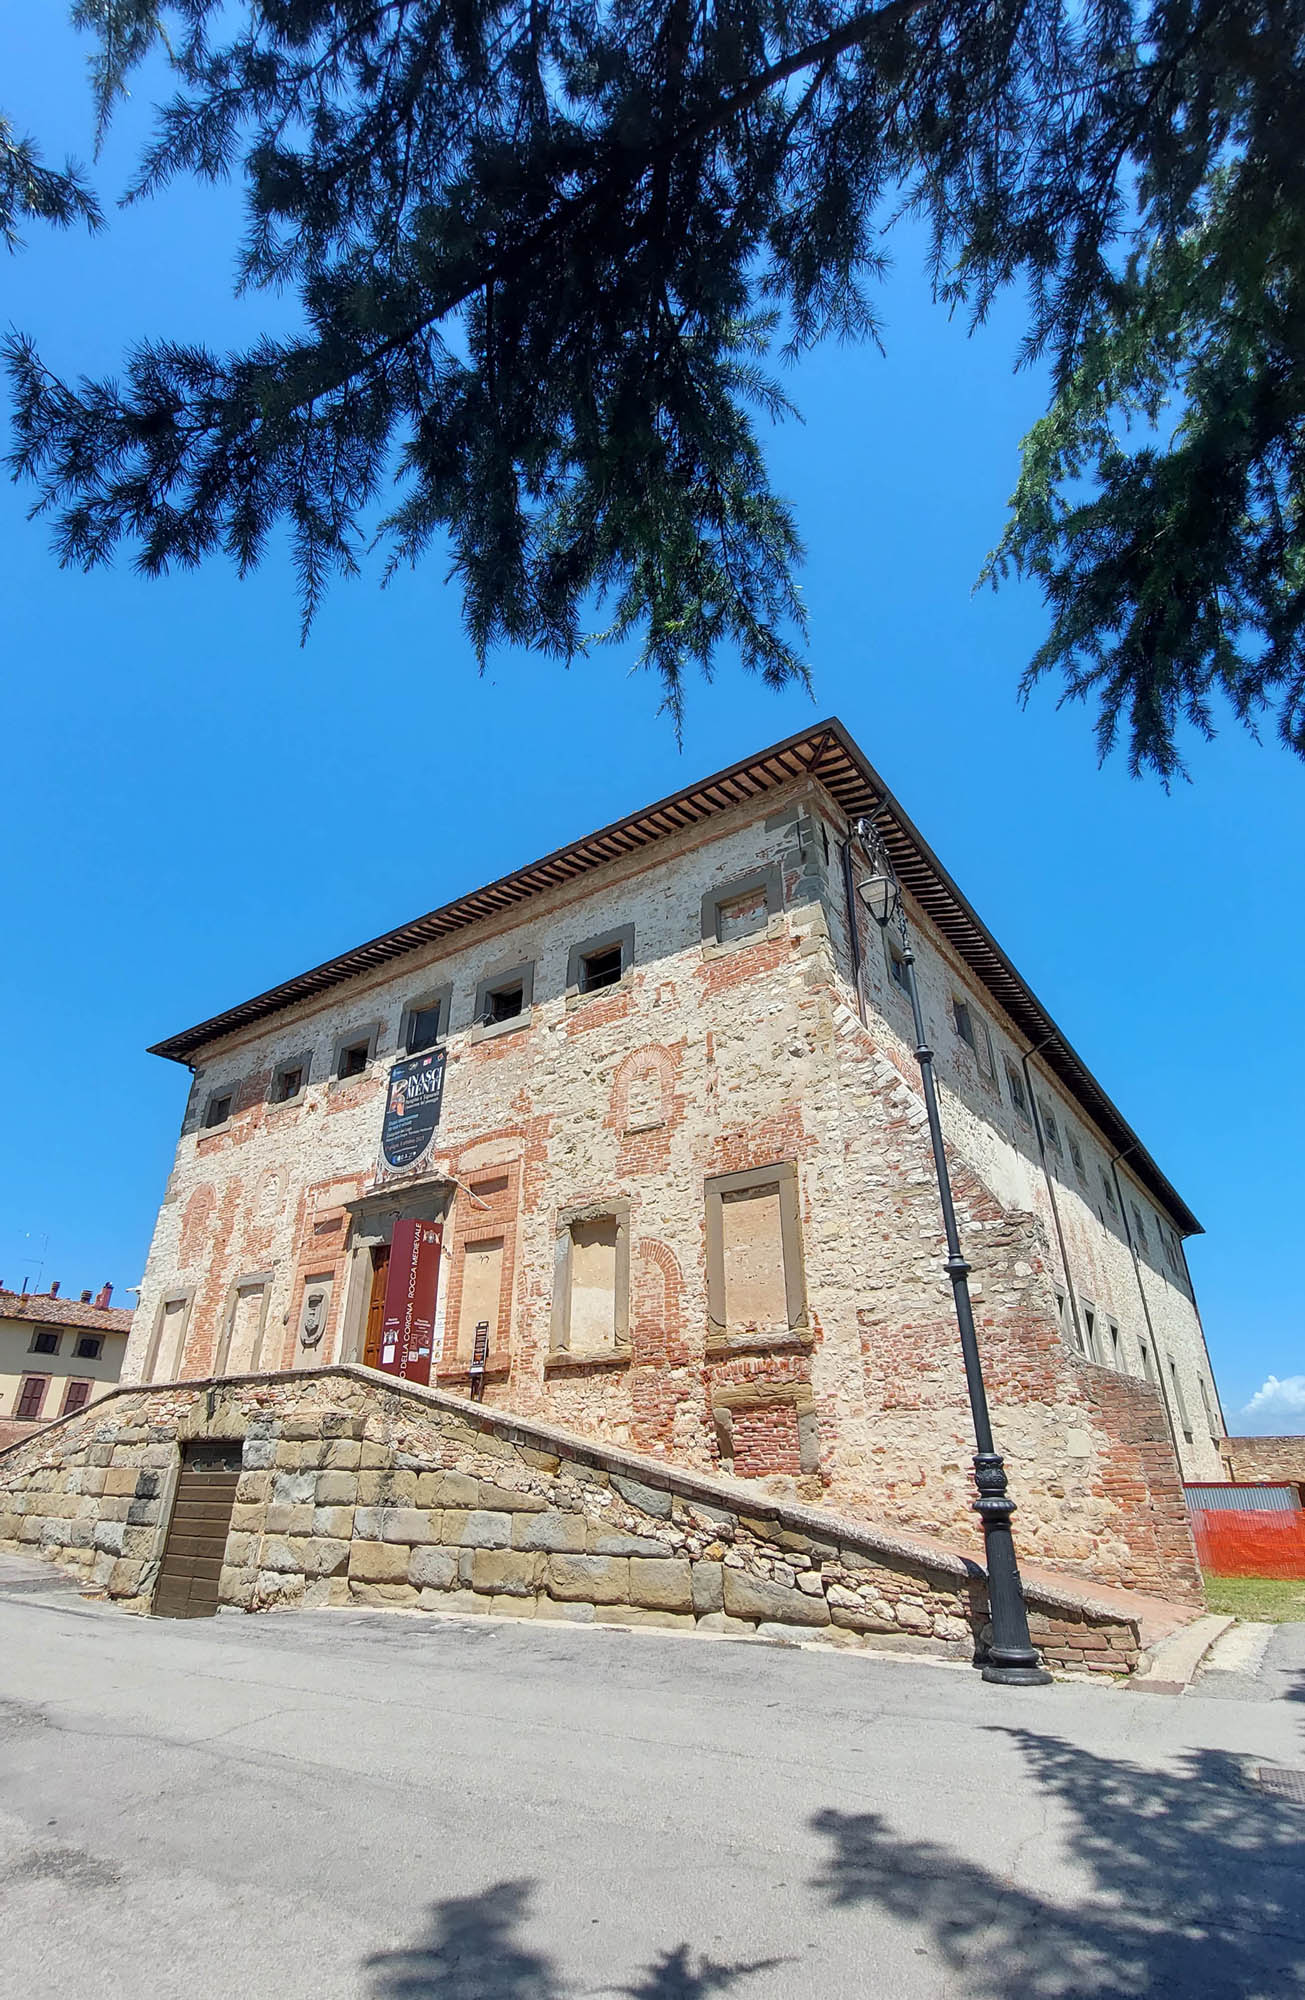 Palazzo della Corgna